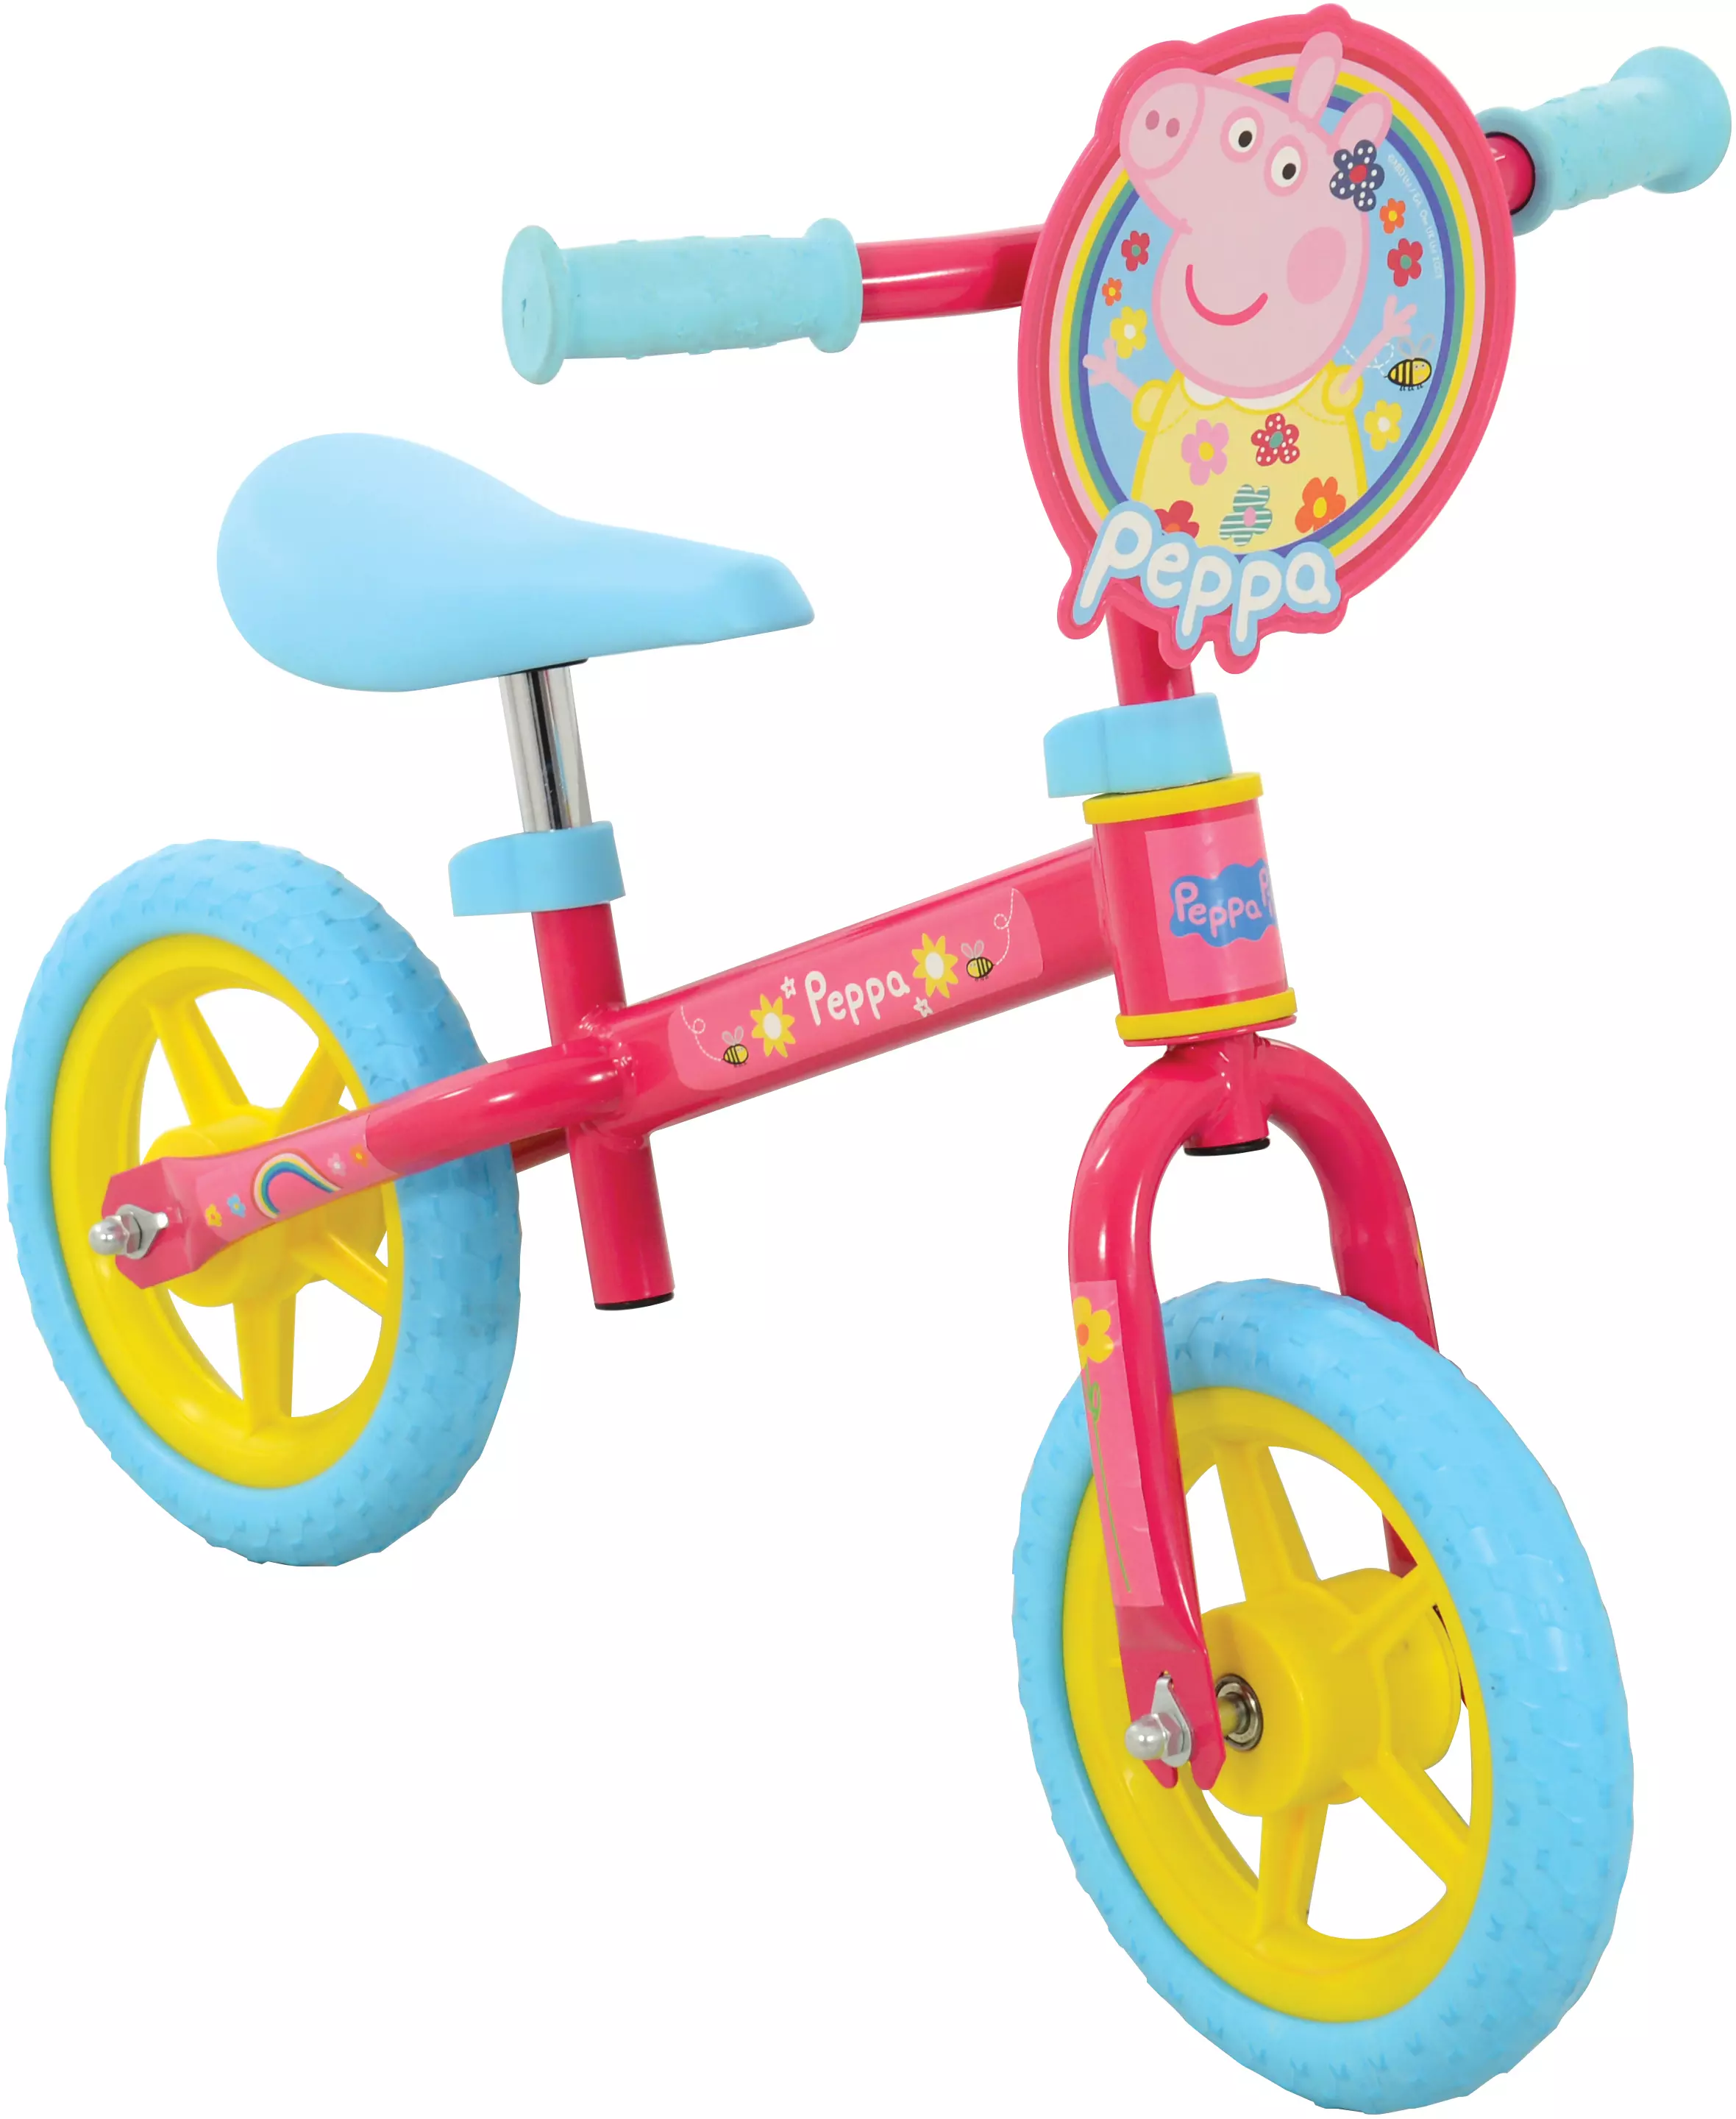 halfords children's balance bikes